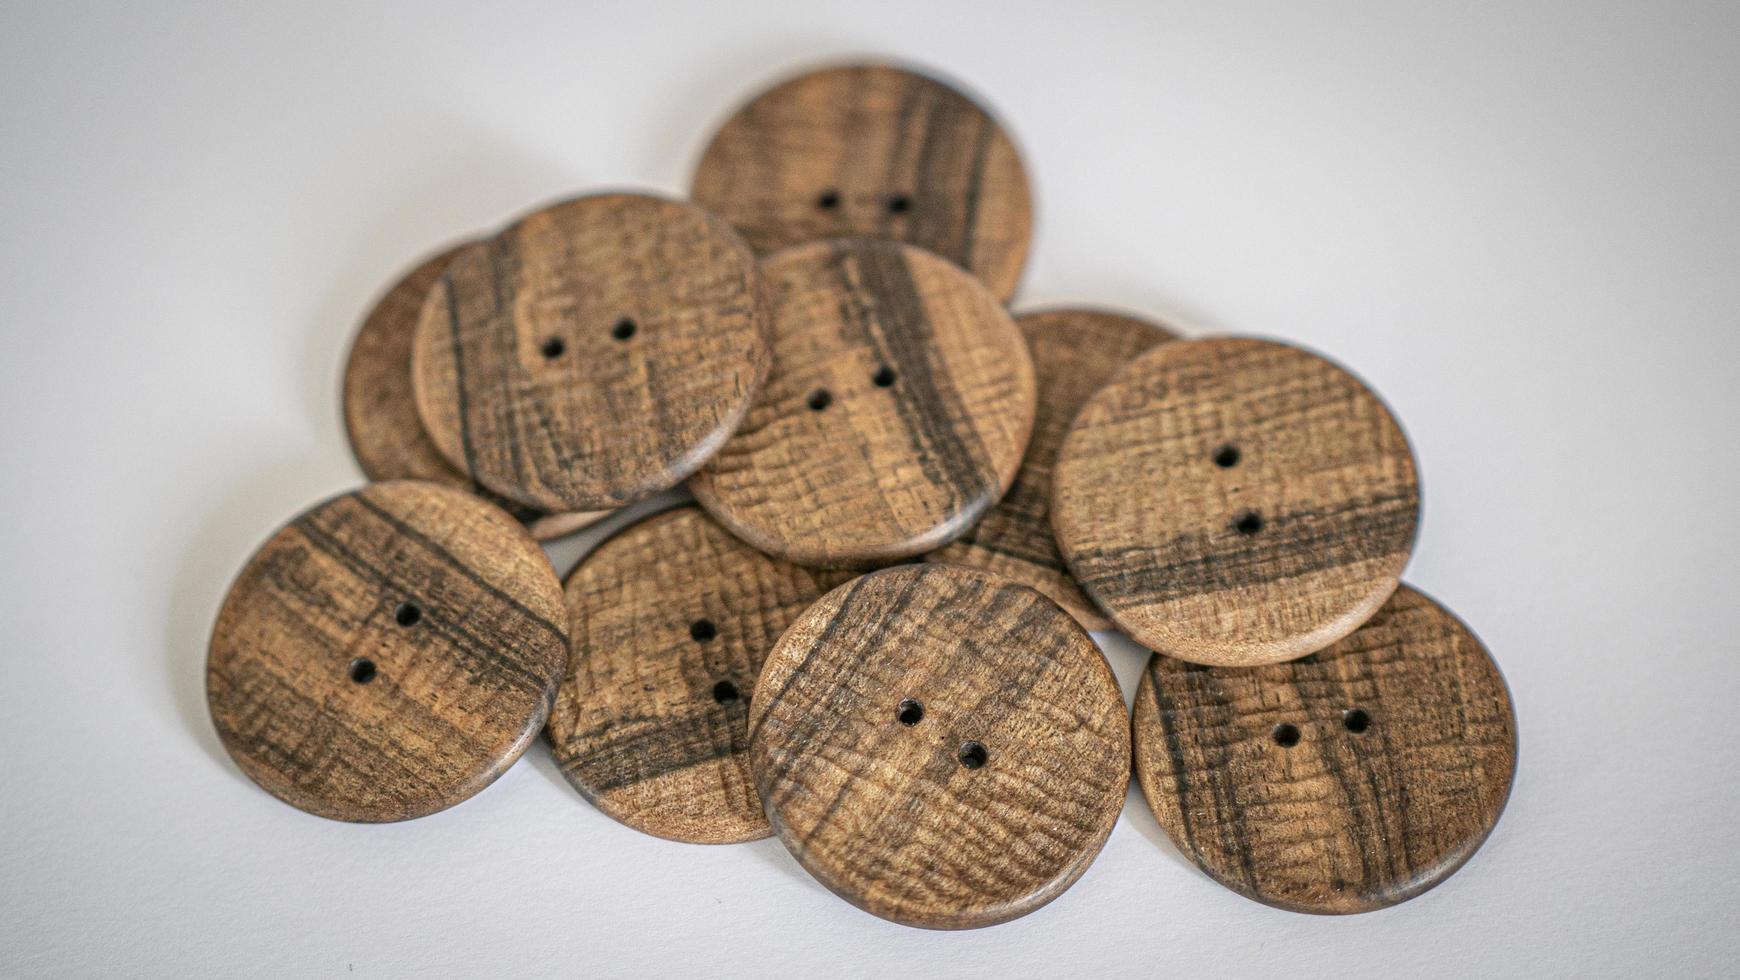 papier peint boutons en bois de noyer avec une texture faite main prononcée photo